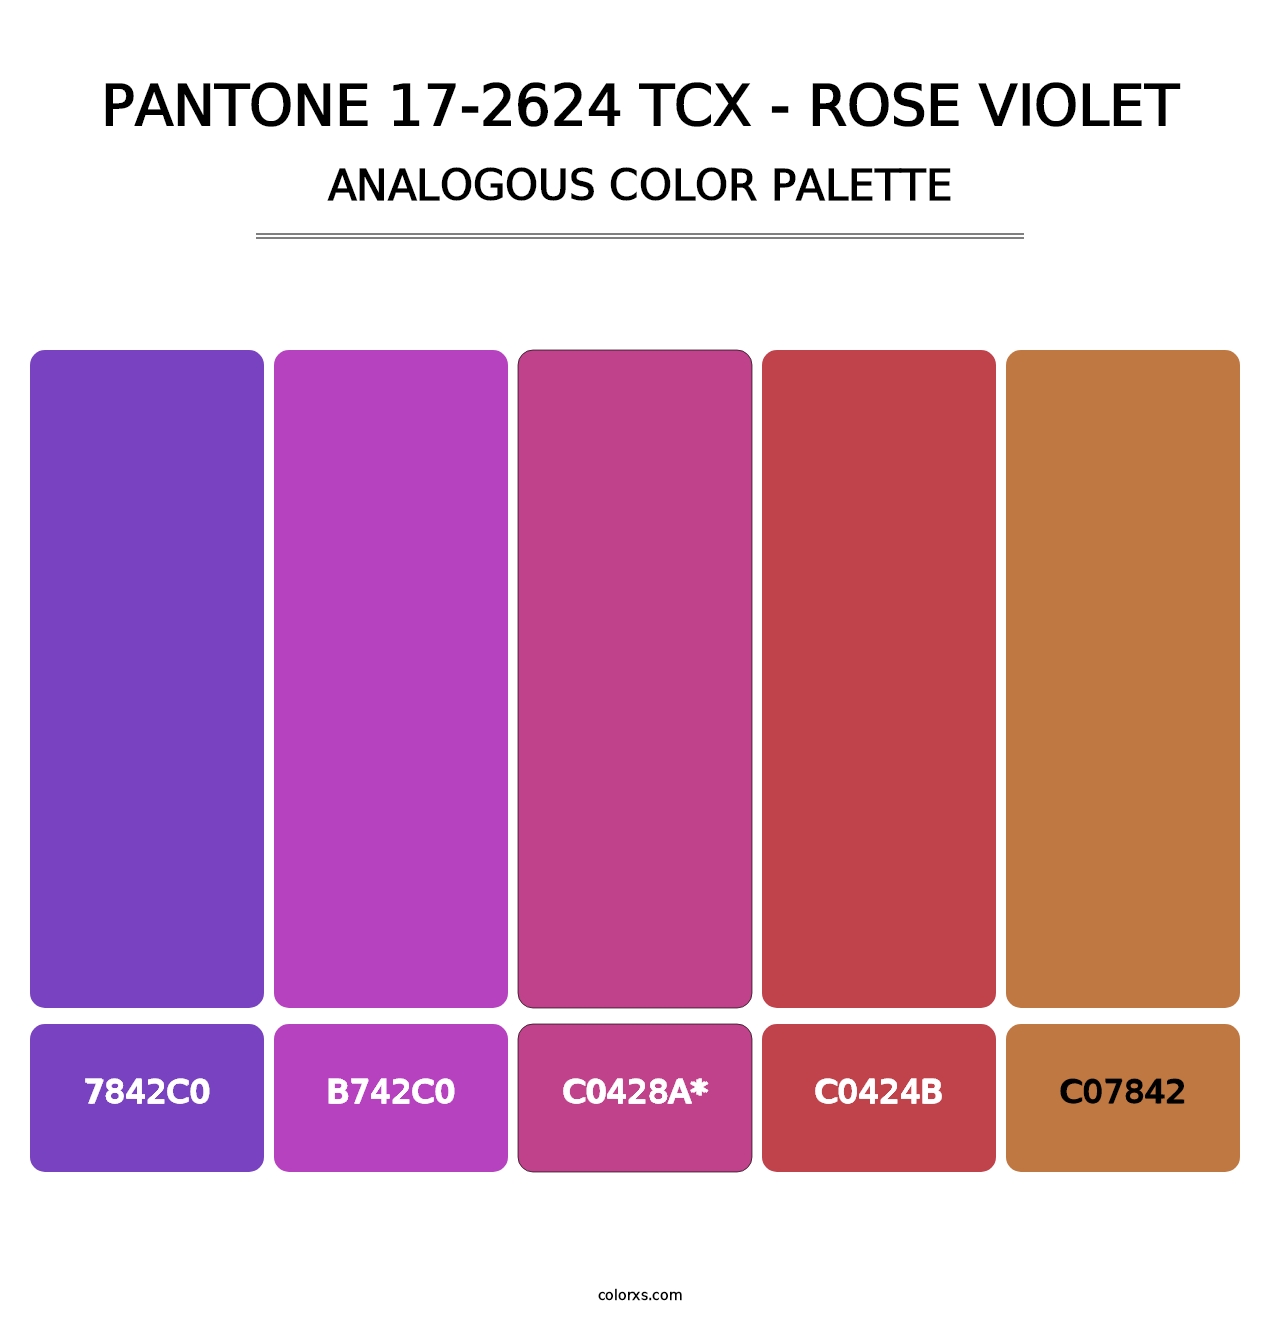 PANTONE 17-2624 TCX - Rose Violet - Analogous Color Palette